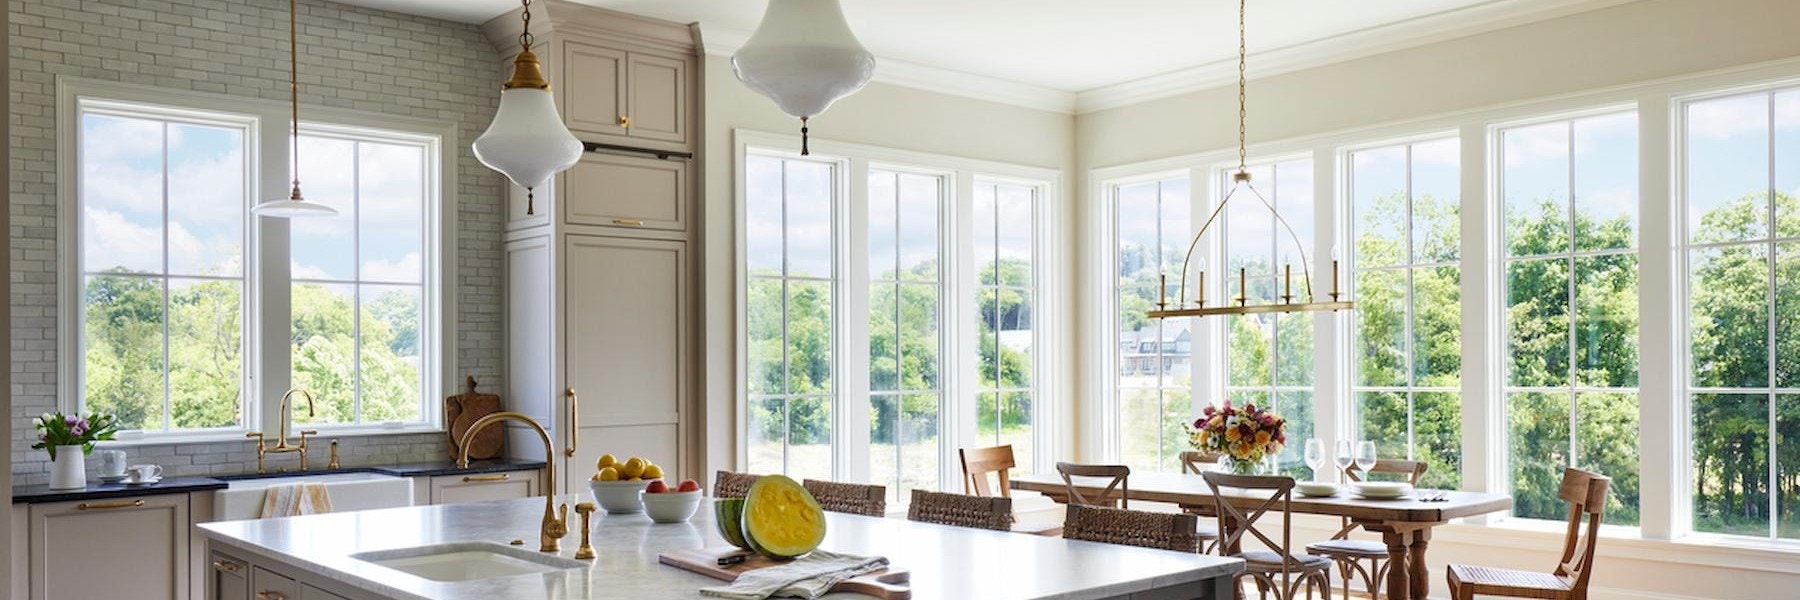 Lifestyle Series Casement windows kitchen